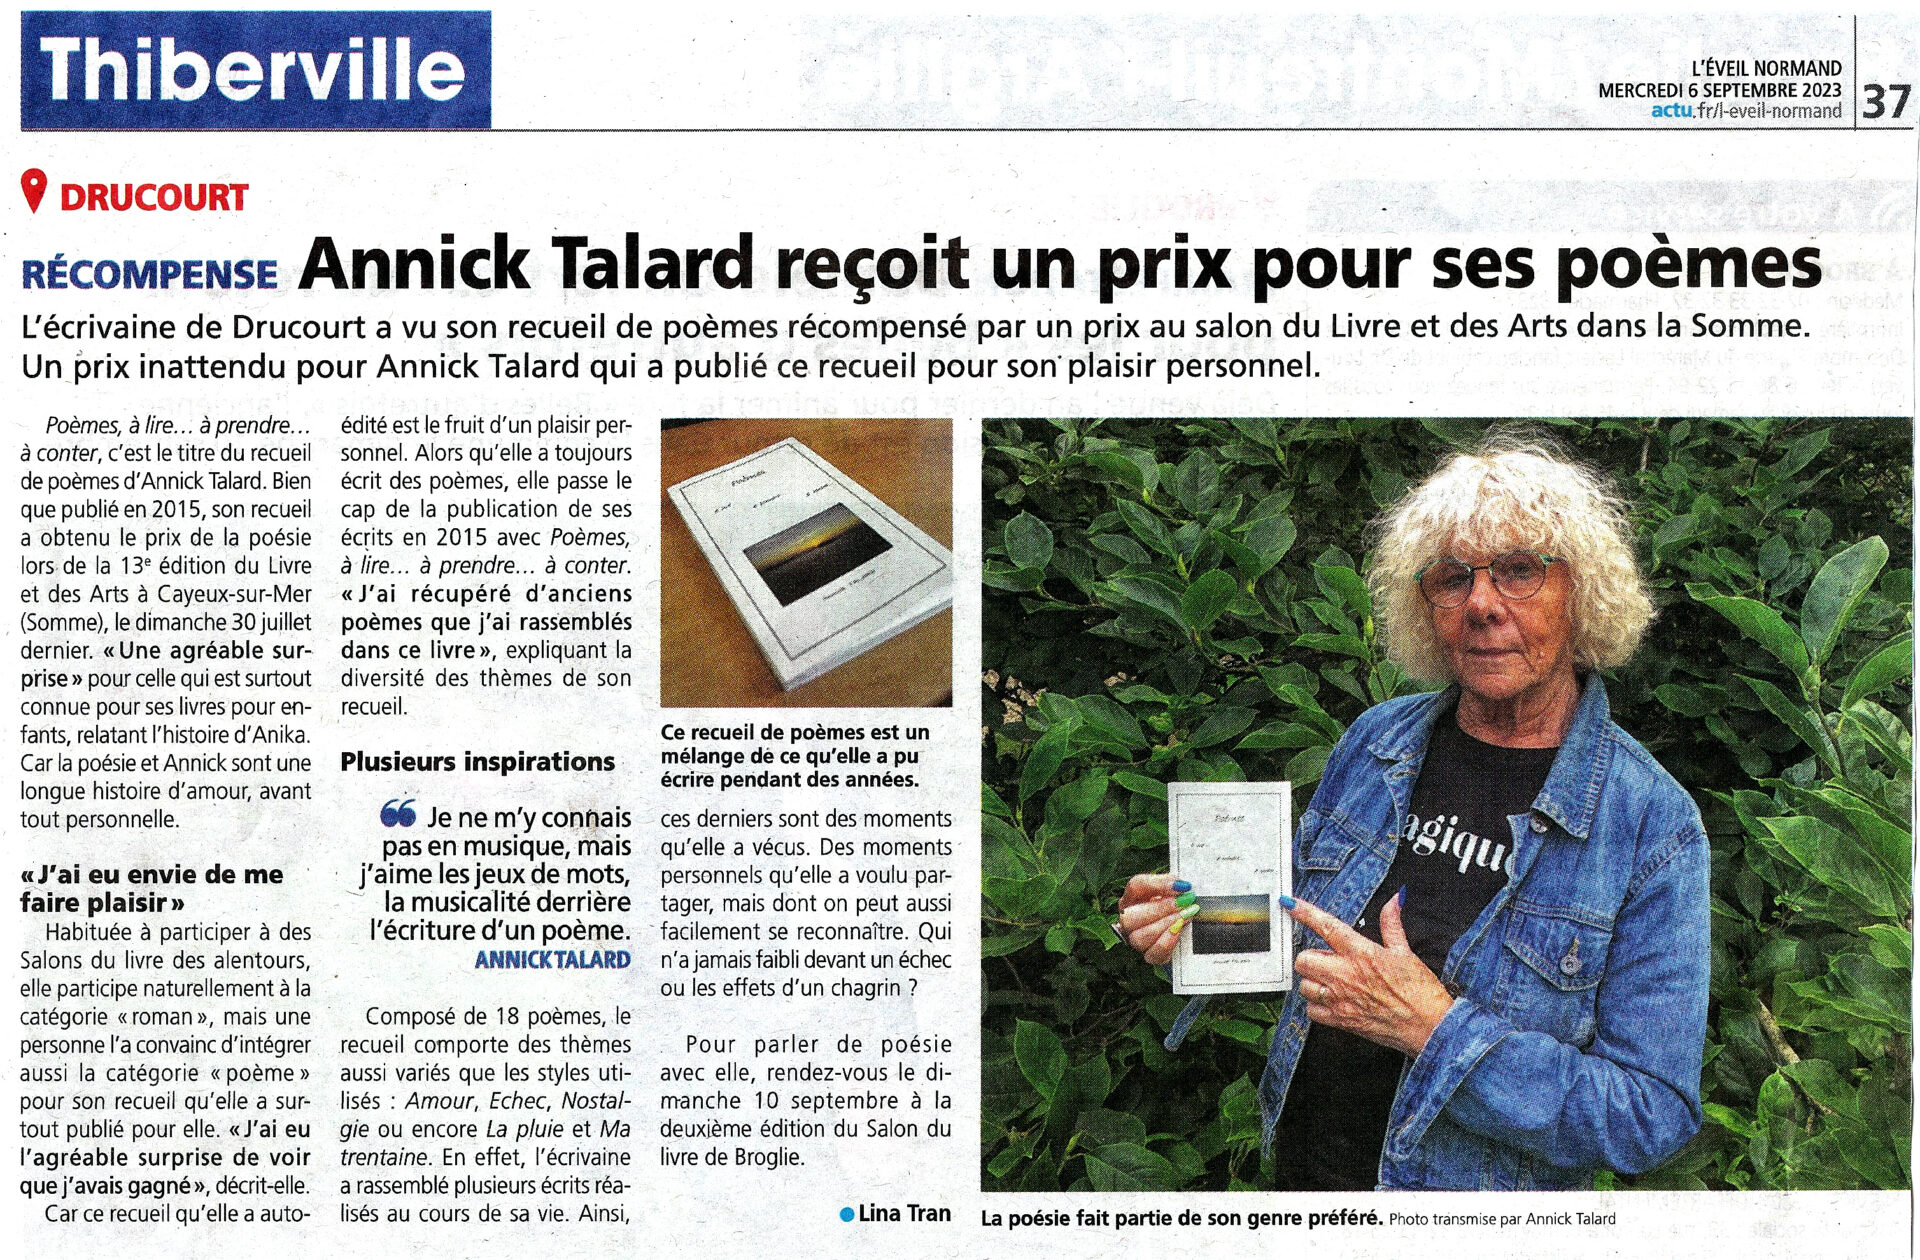 Annick Talard - Eveil Normand 06 09 2023